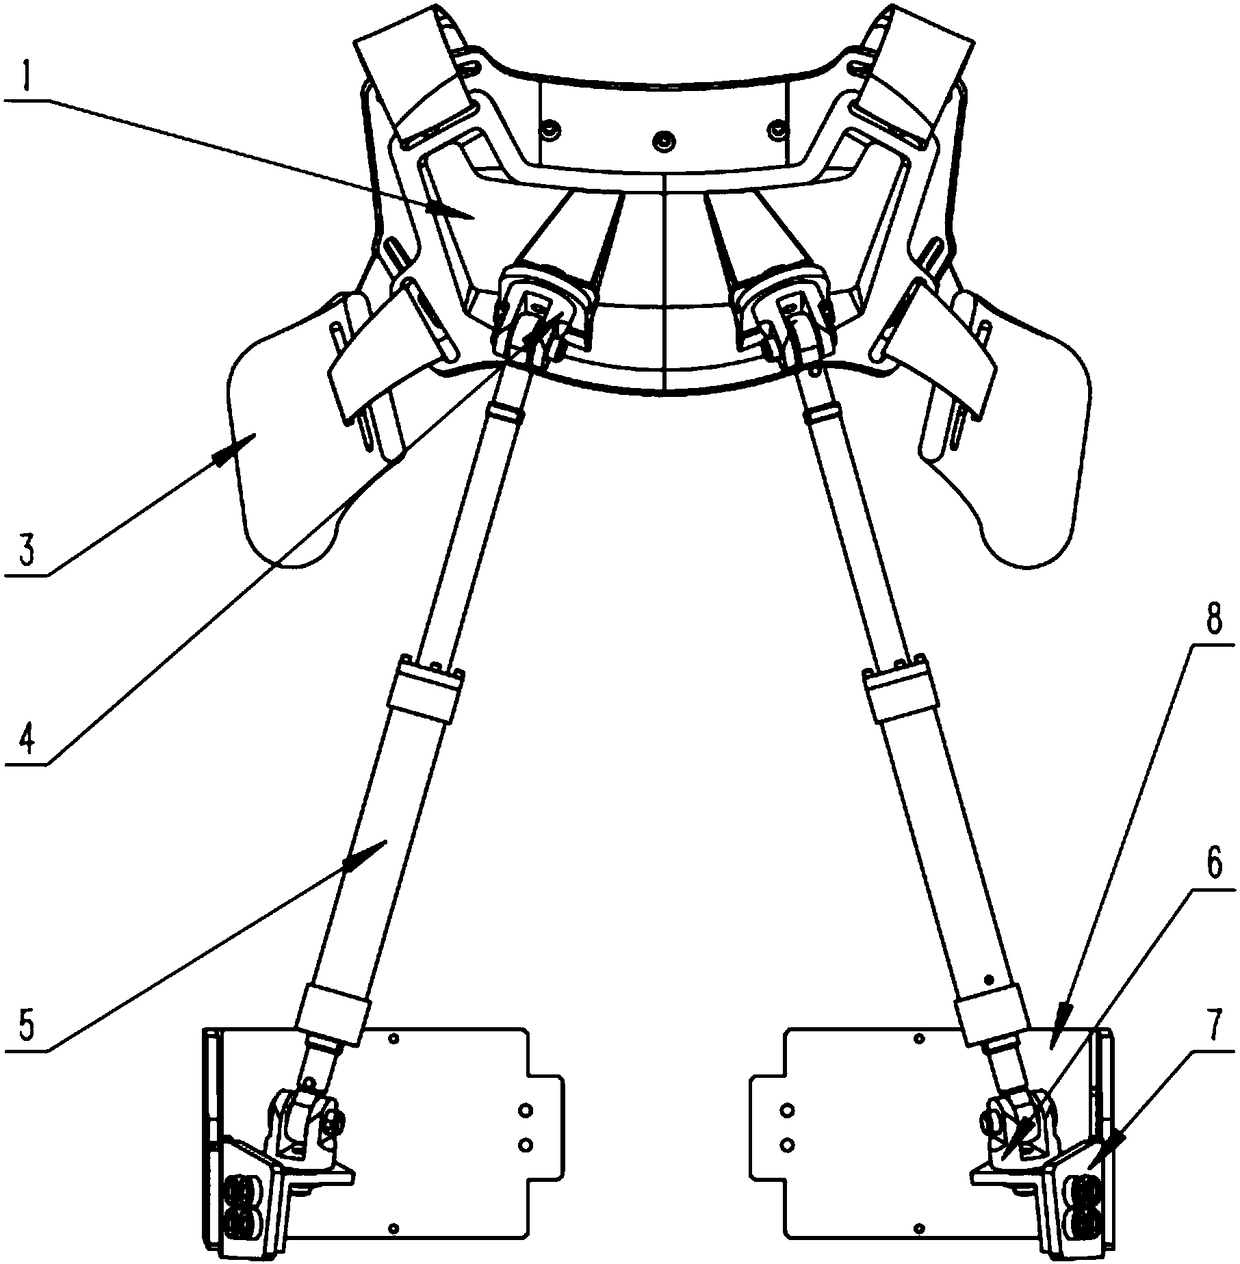 Upper body chest power-assist mechanism for power-assist exoskeleton robot